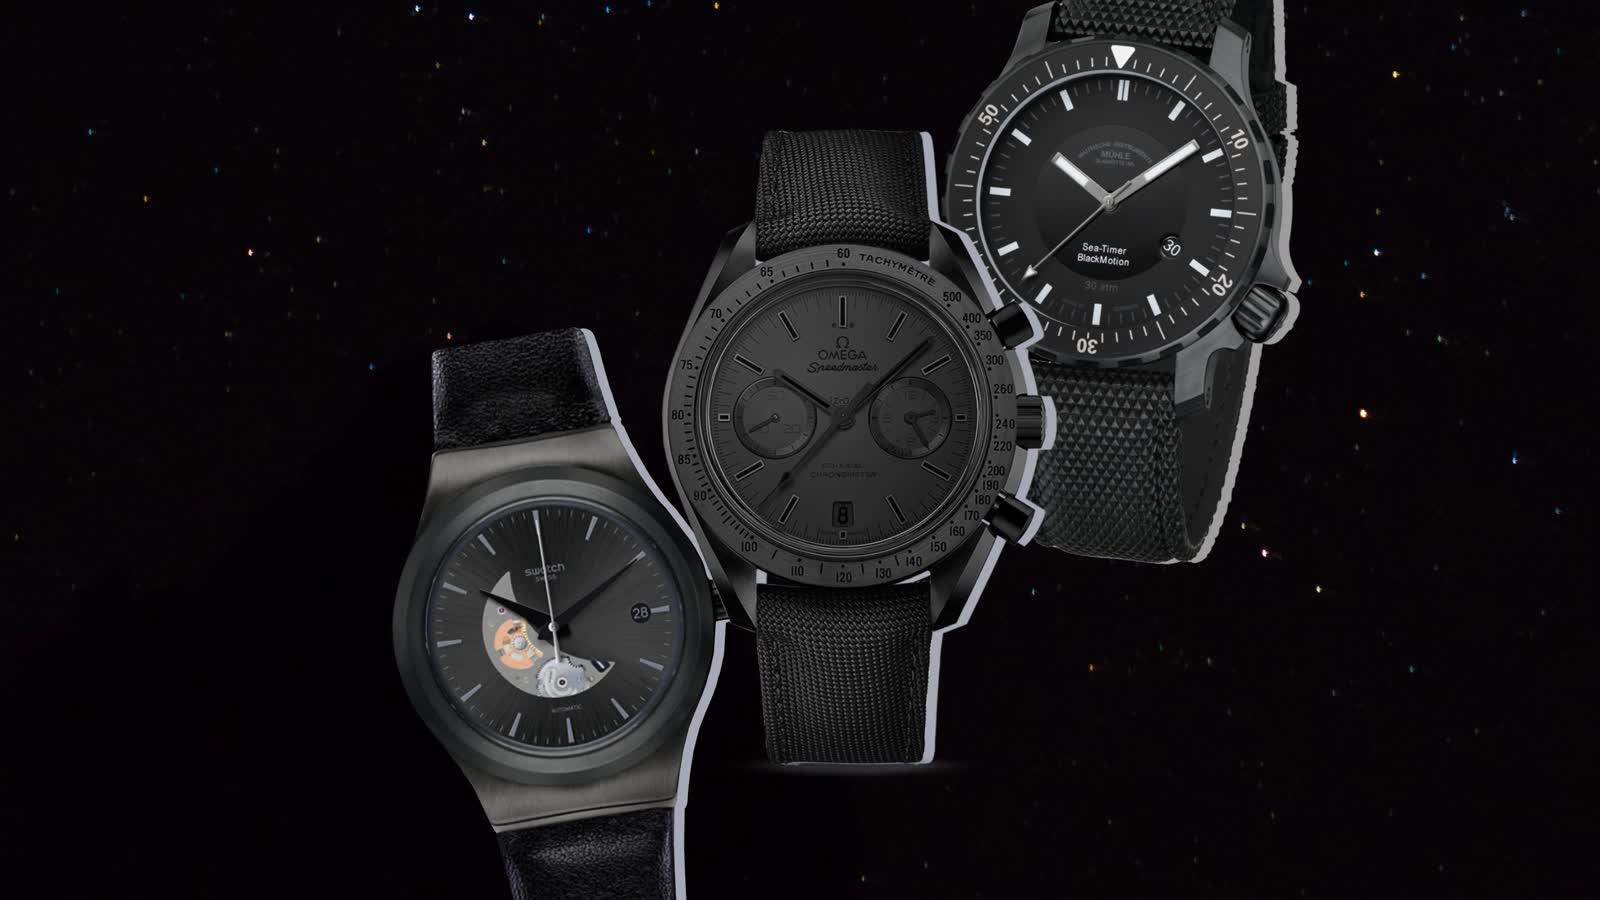 Schwarze Uhren: 7 elegante Begleiter für jede Gelegenheit